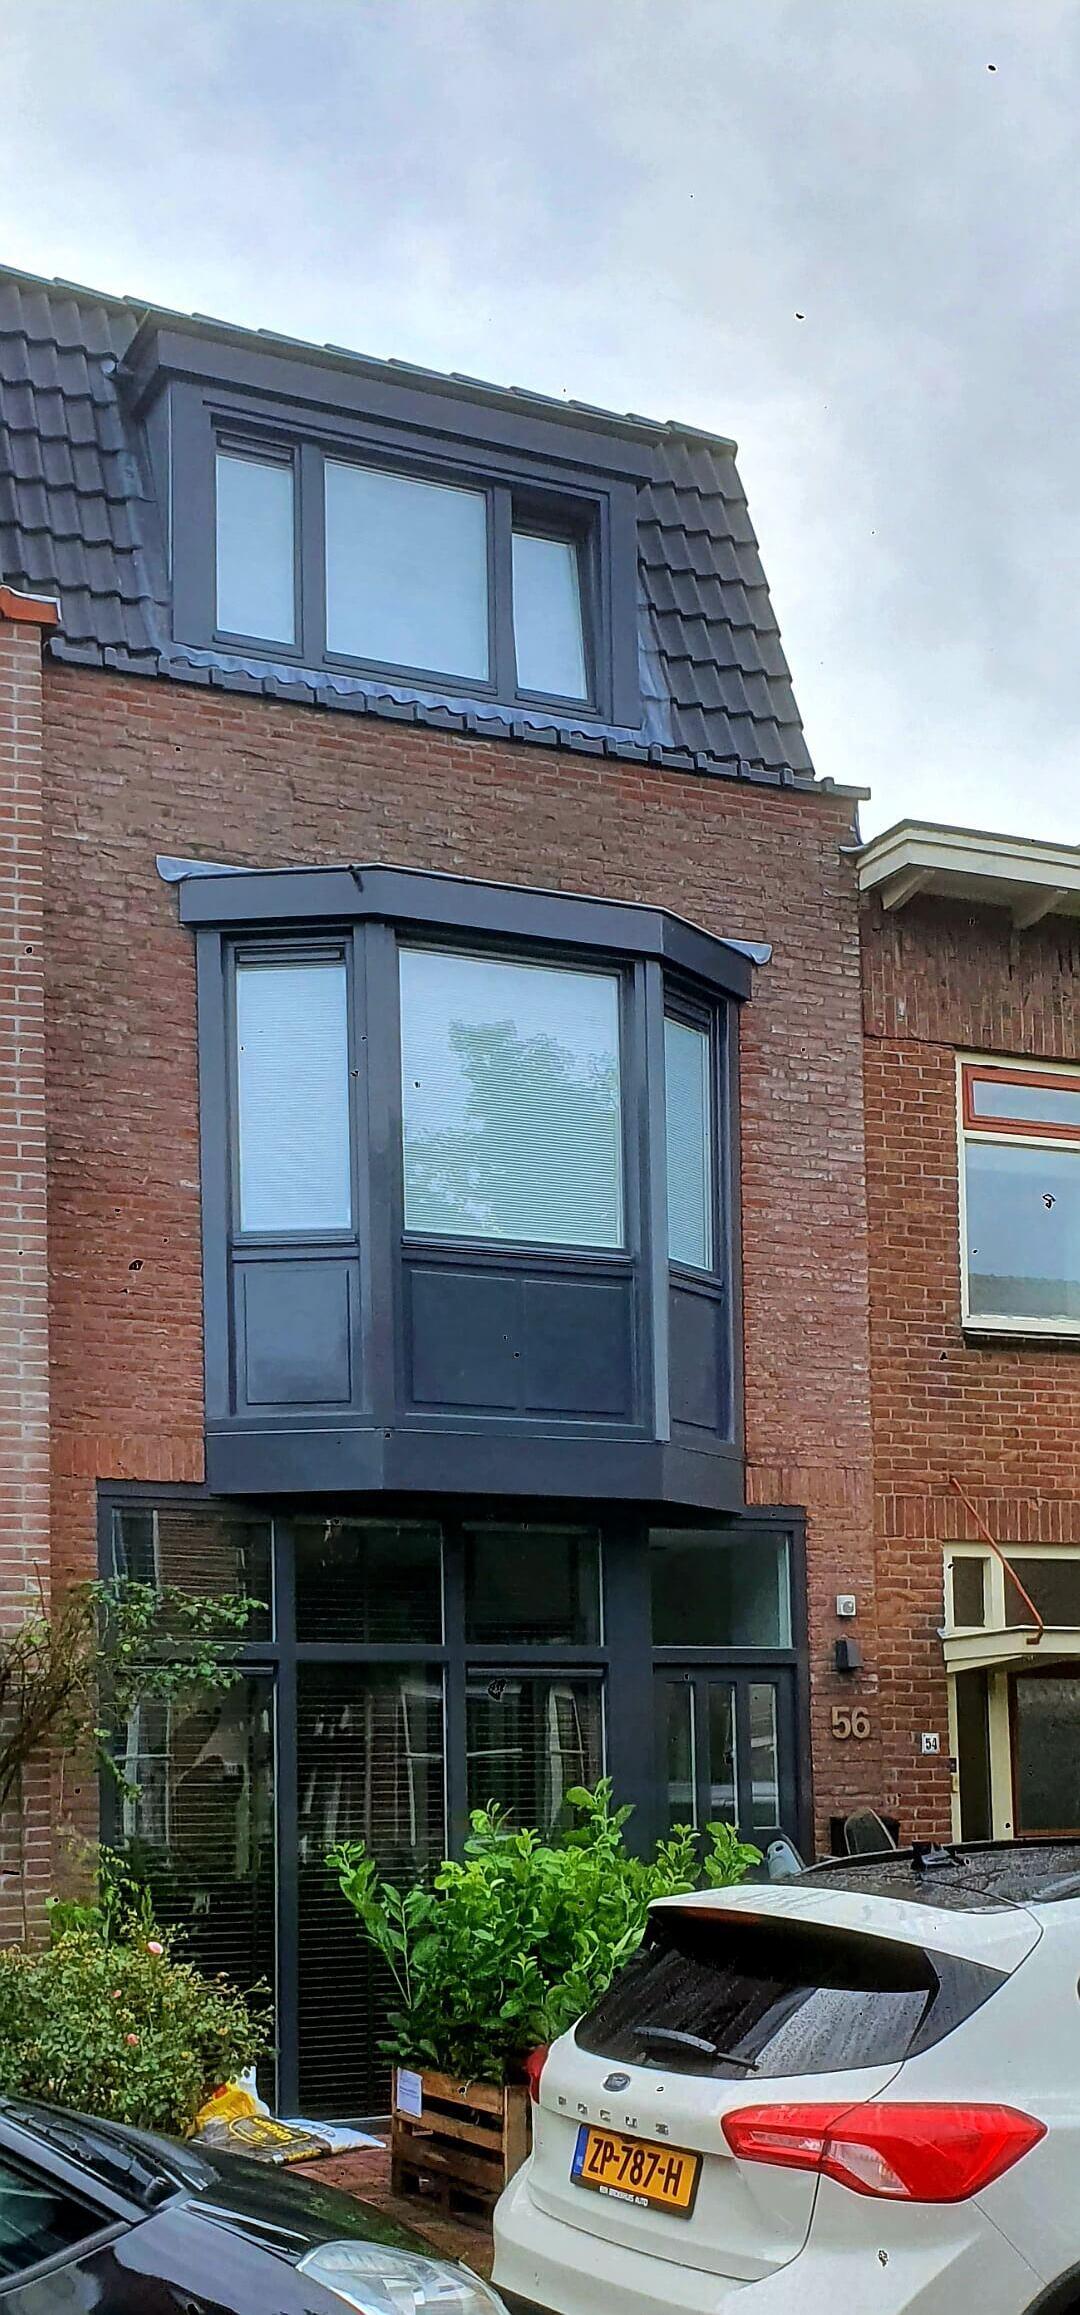 Complete verbouwing woonhuis Haarlem